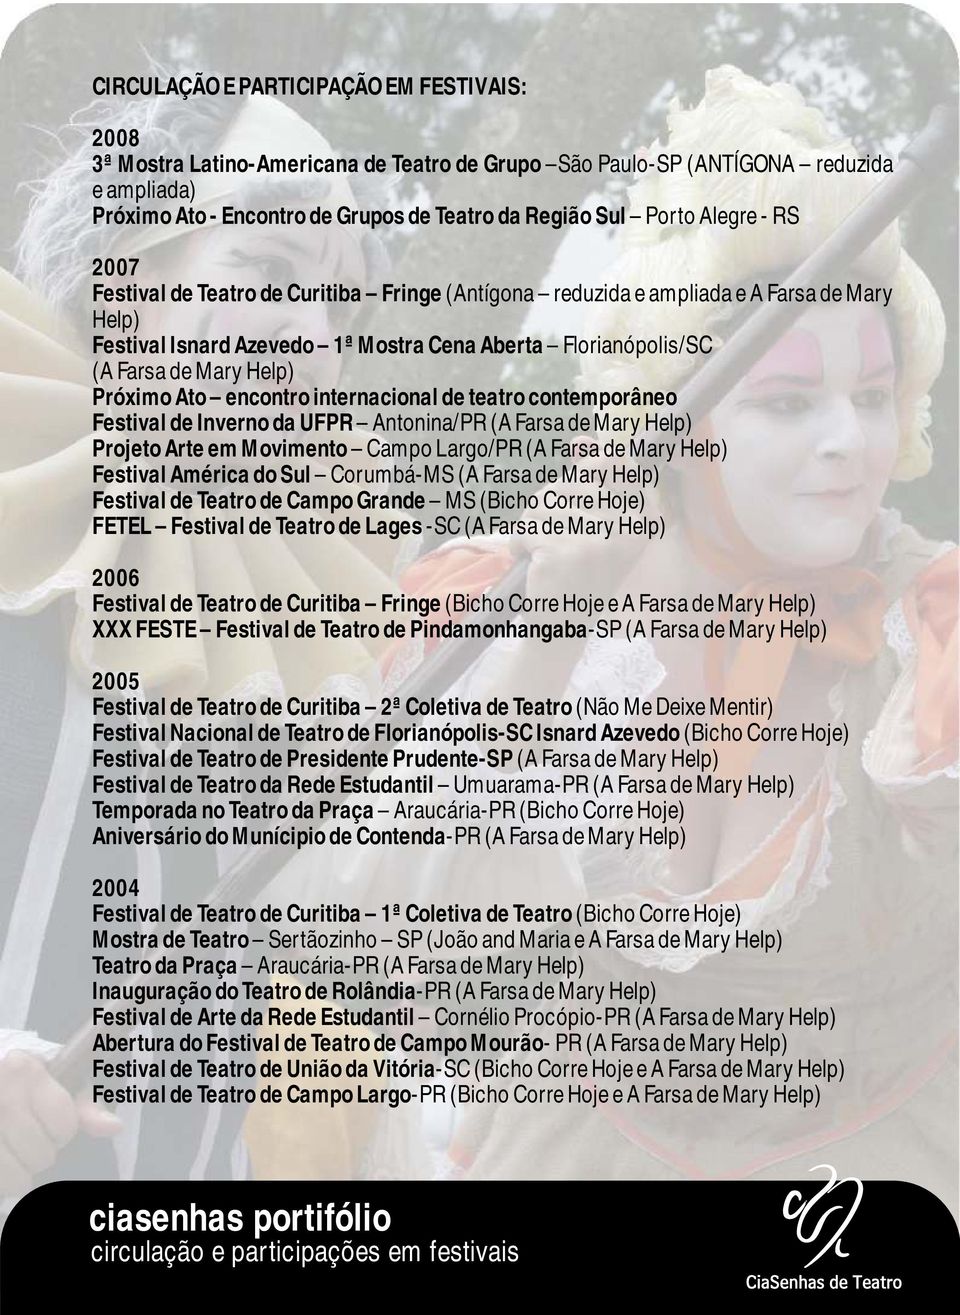 Próximo Ato encontro internacional de teatro contemporâneo Festival de Inverno da UFPR Antonina/PR (A Farsa de Mary Help) Projeto Arte em Movimento Campo Largo/PR (A Farsa de Mary Help) Festival